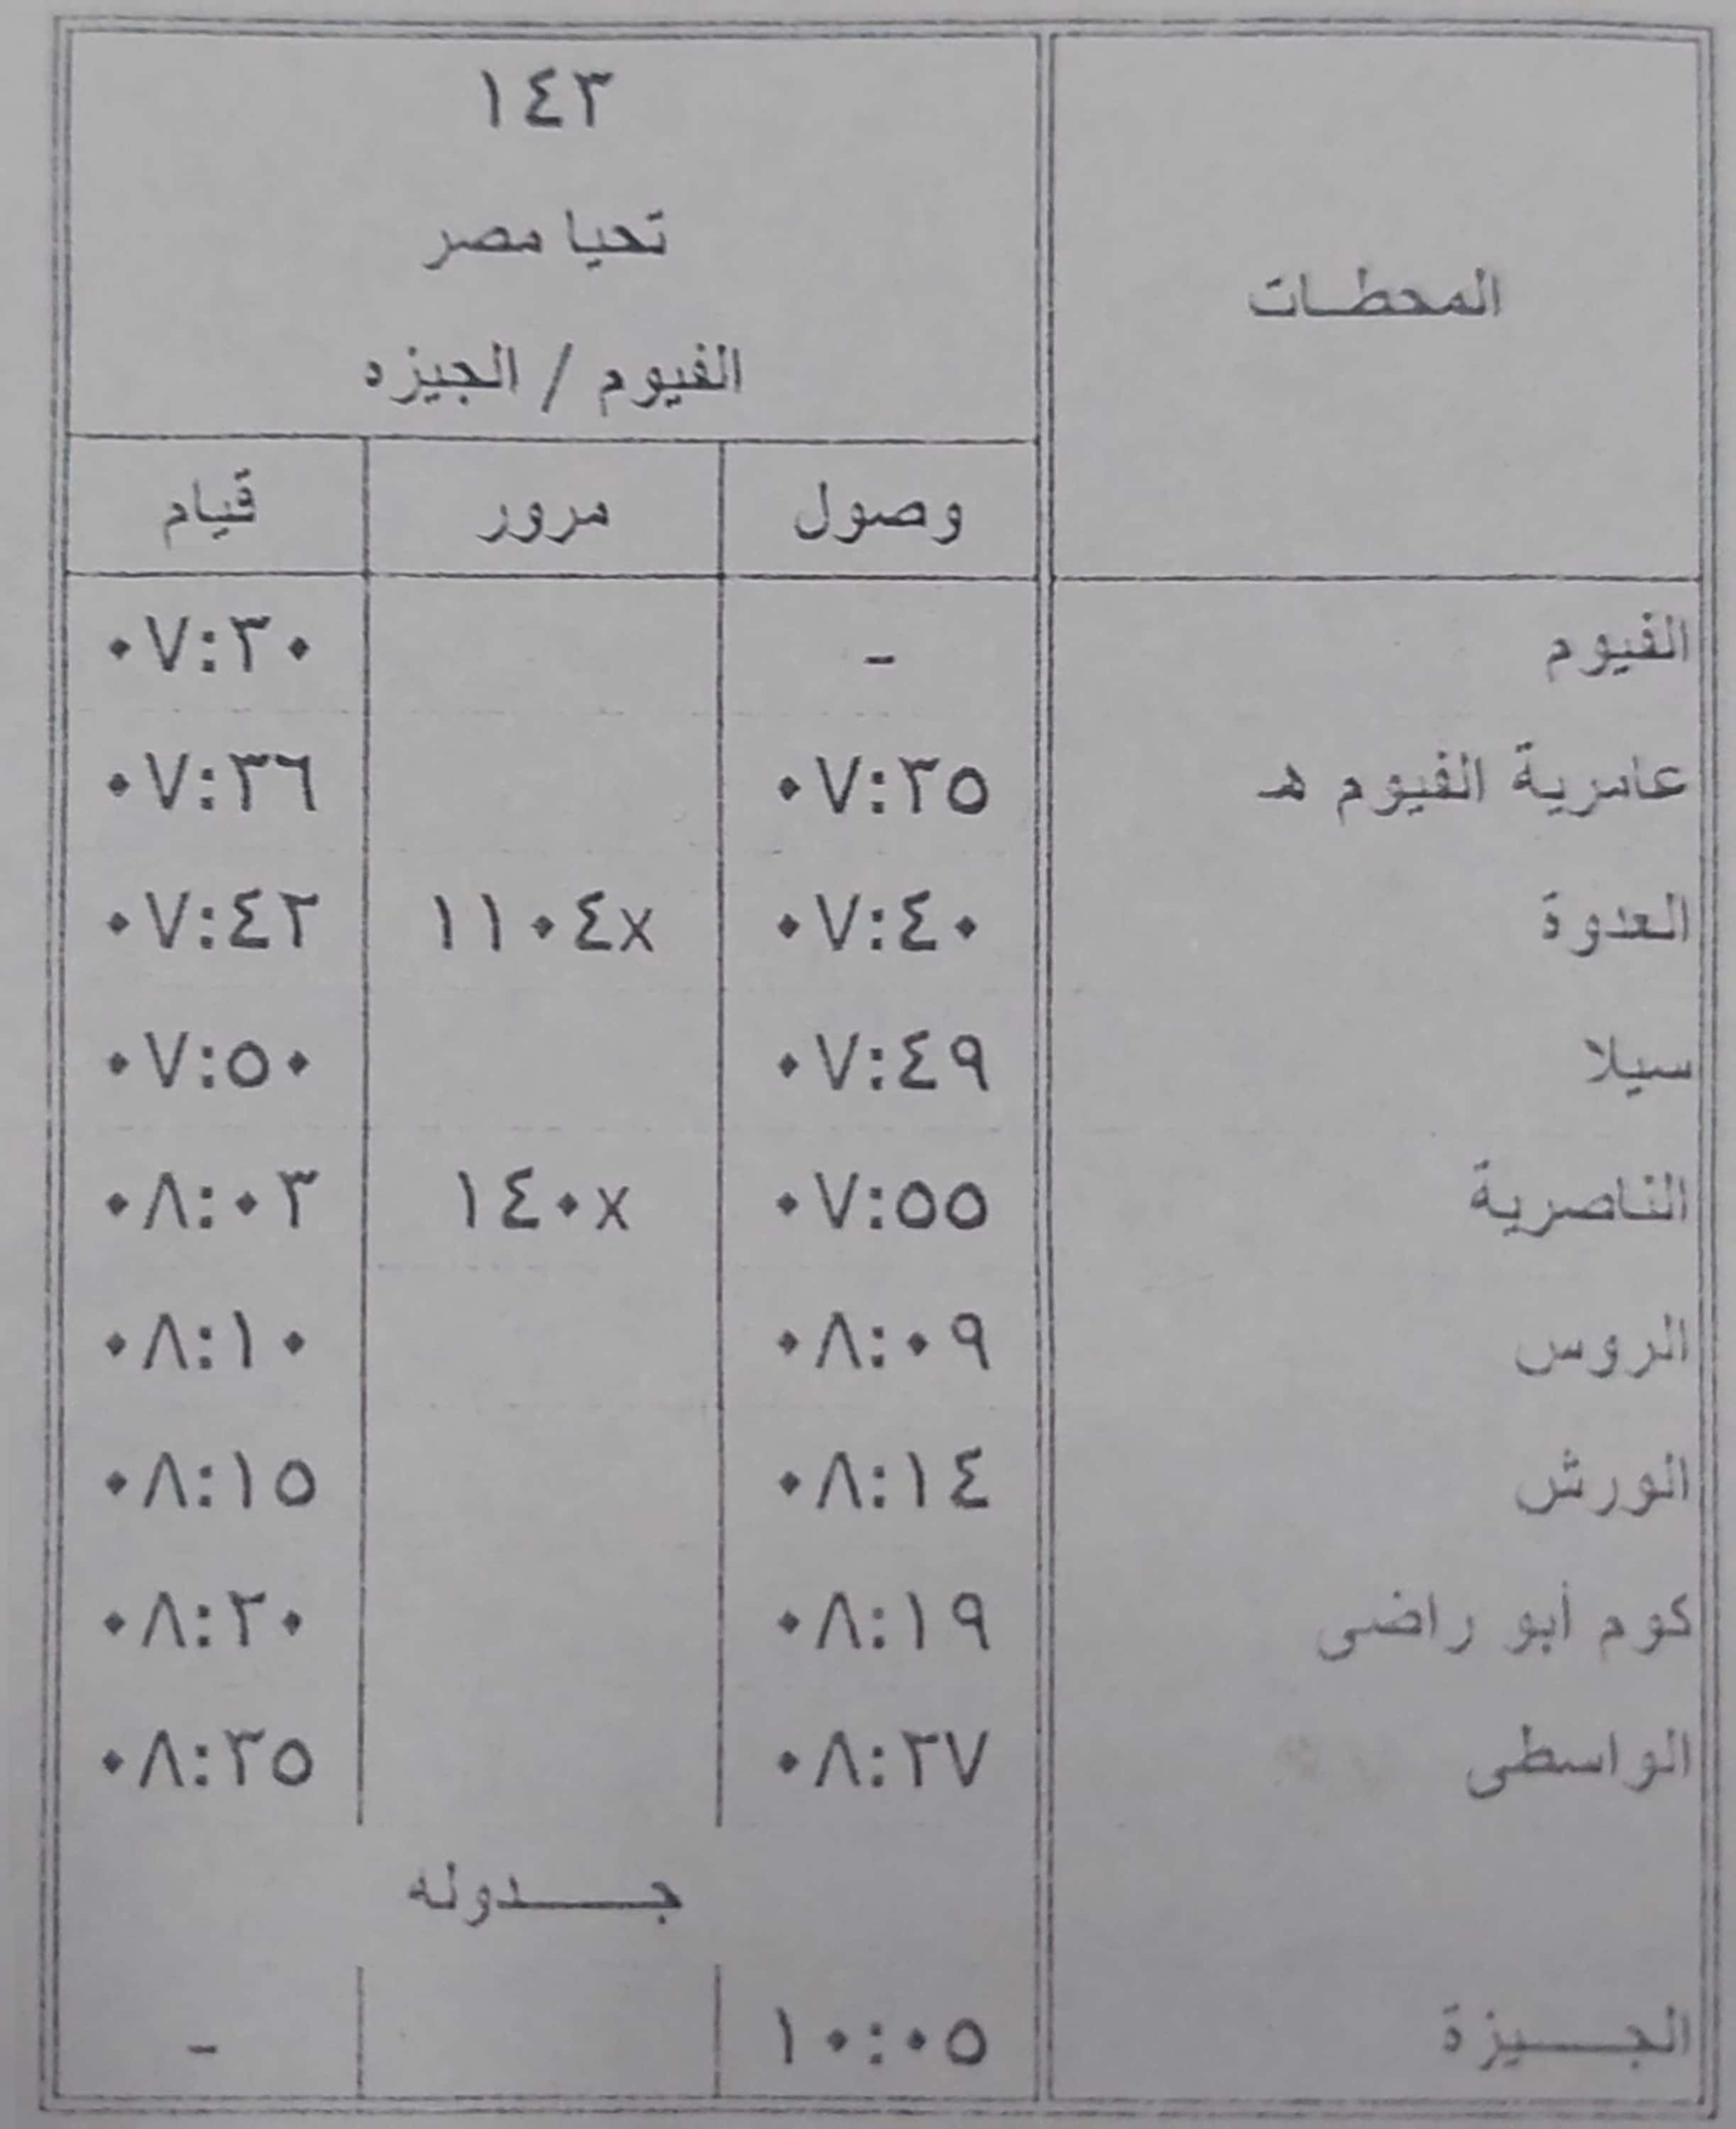 مواعيد بعض القطارات على خط القاهرة  الأقصر و الواسطي  الفيوم (2)